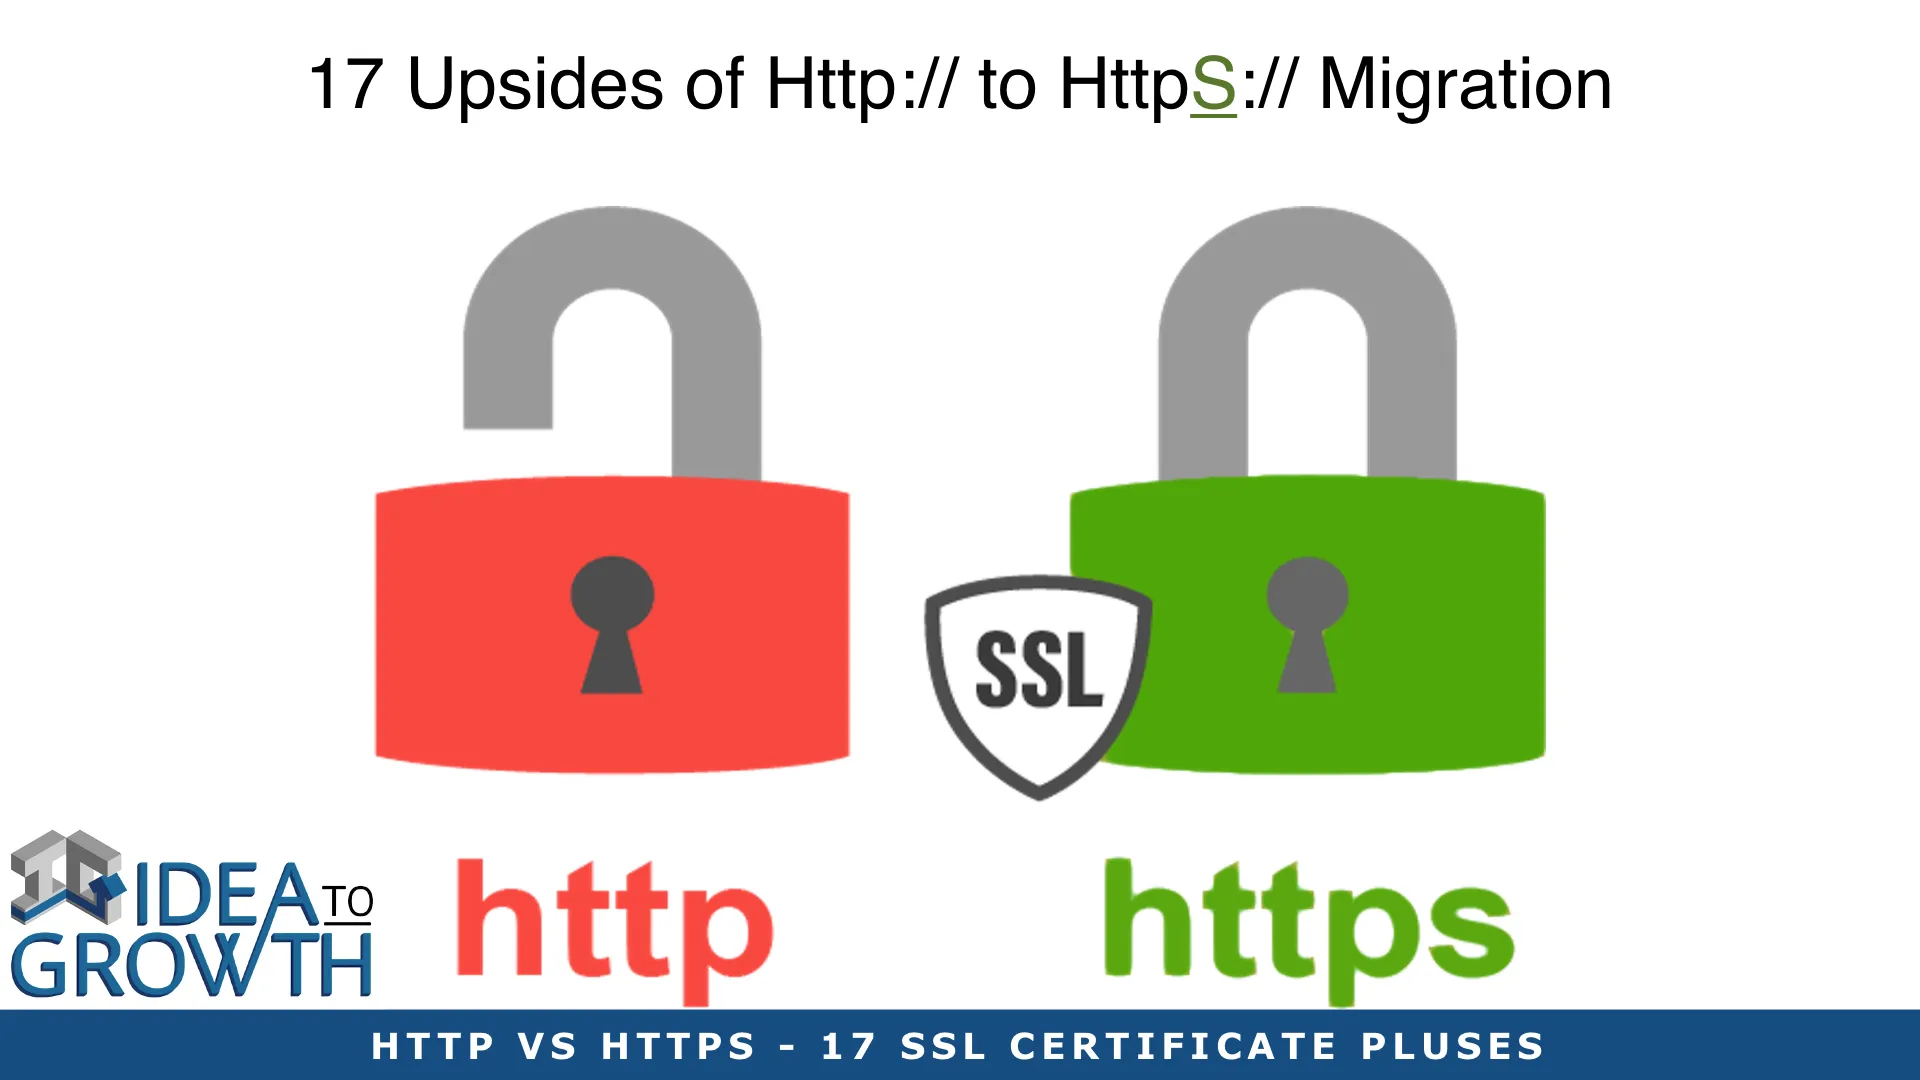 HTTP VS HTTPS - 17 SSL CERTIFICATE PLUSES